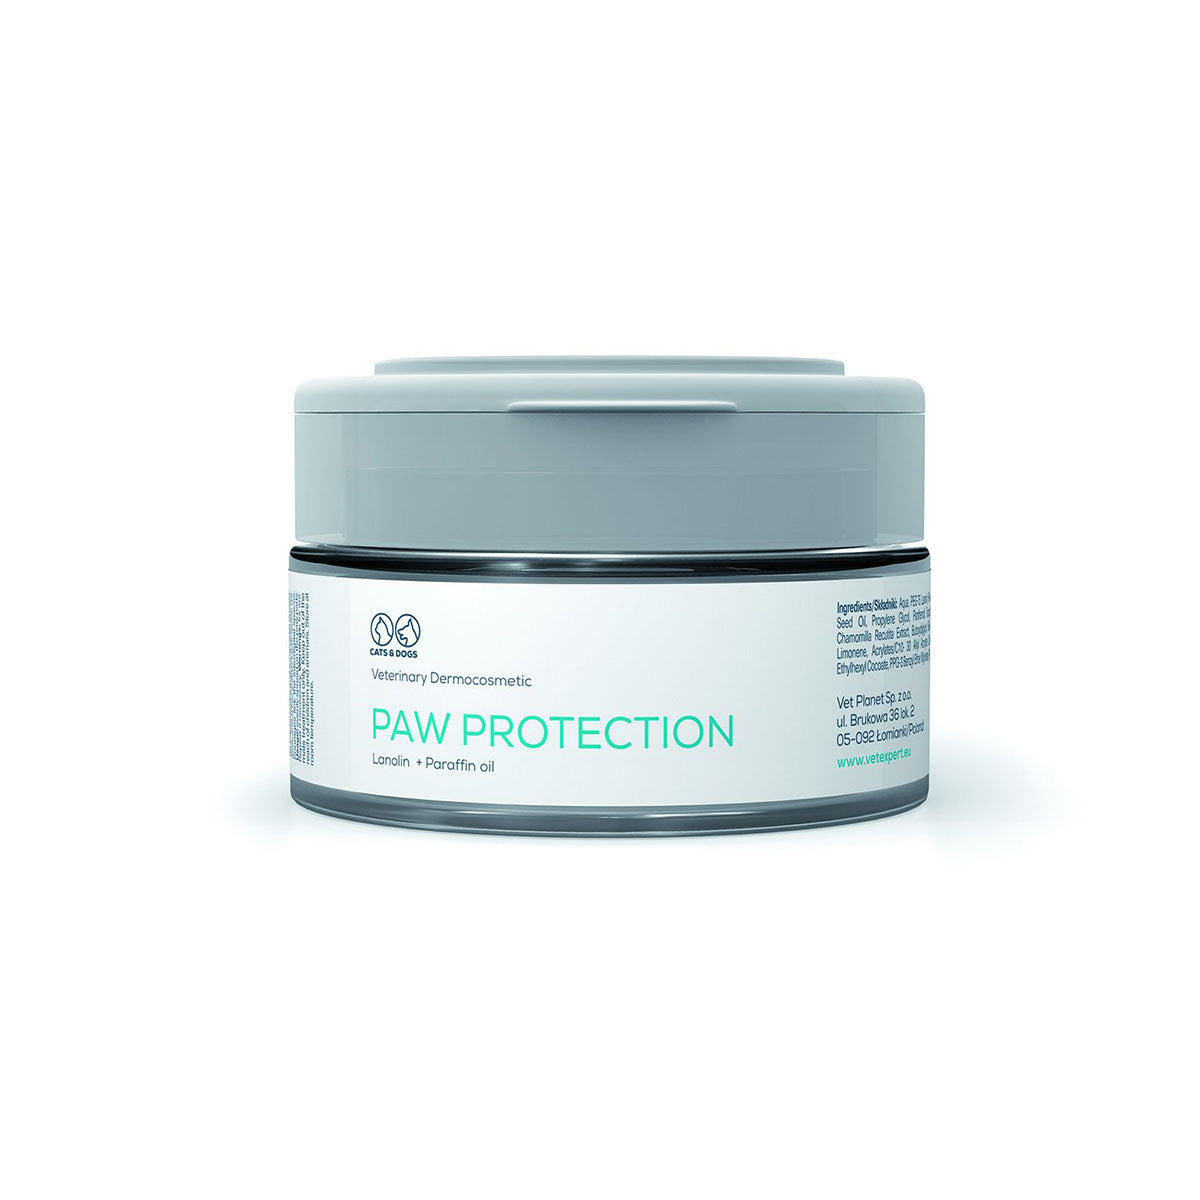 Paw Protection - apsauginis pėdučių tepalas